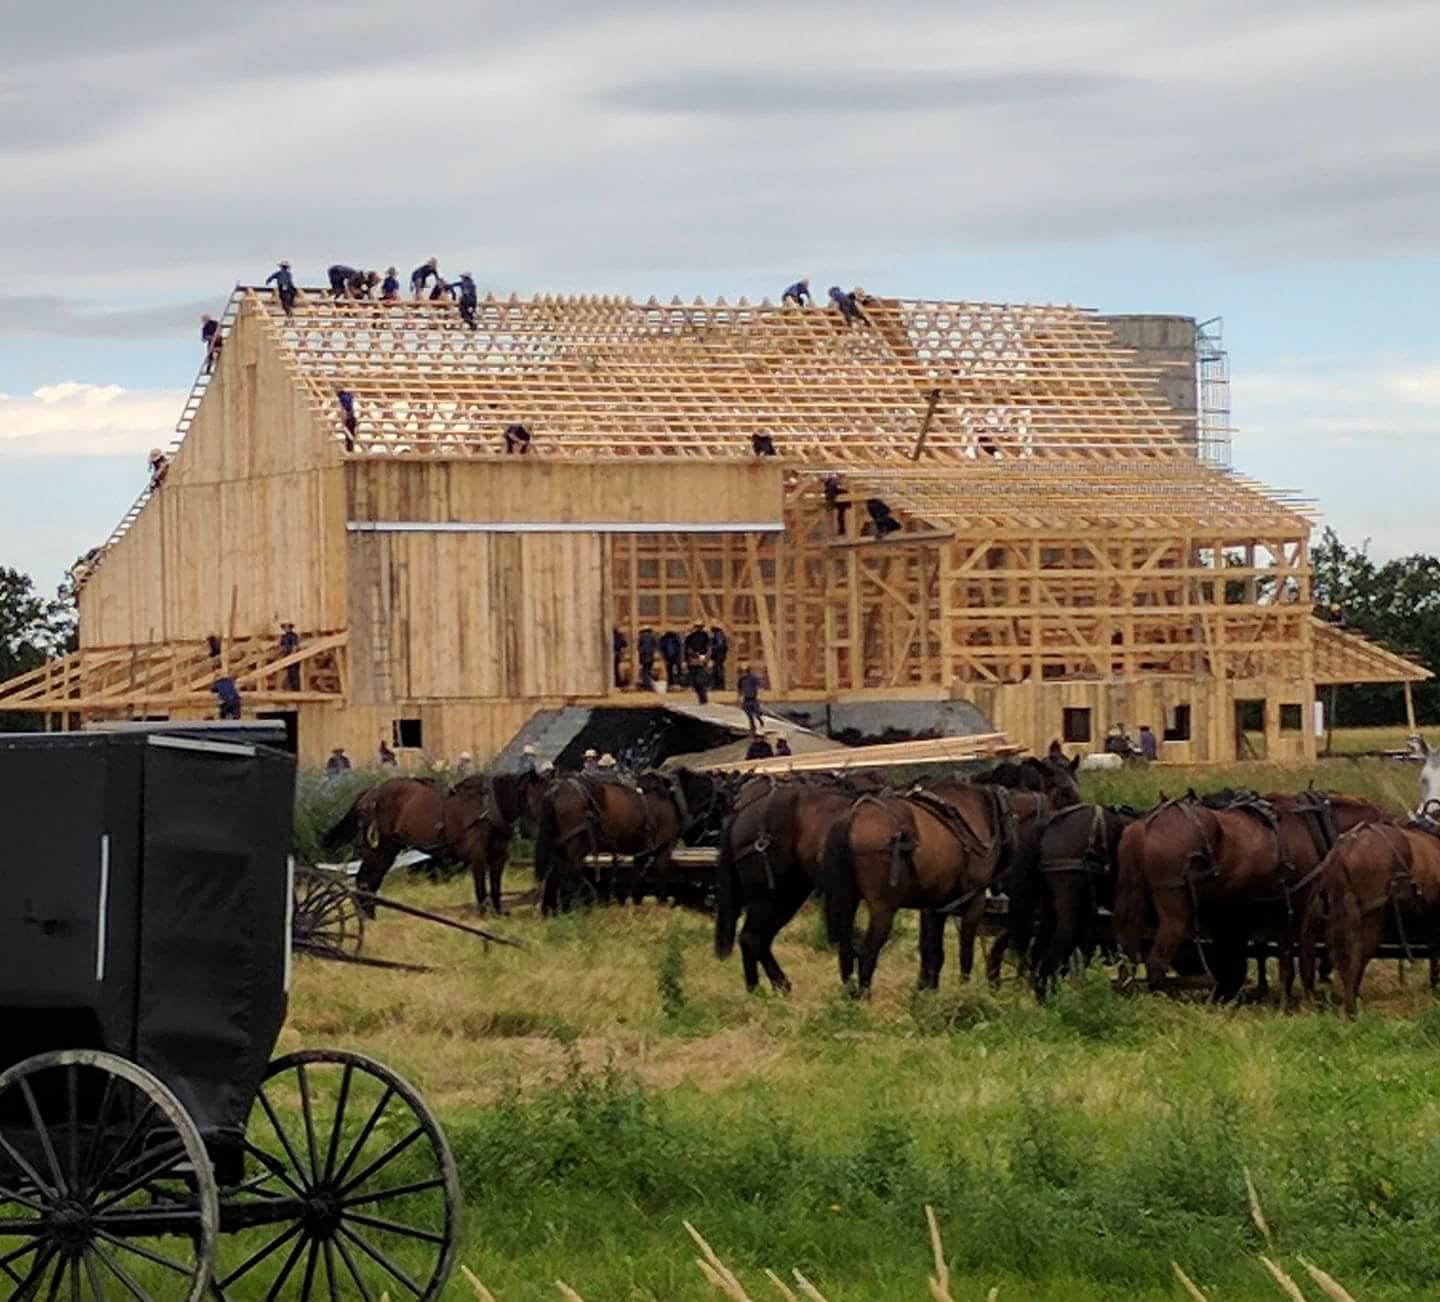 The Amish raising a barn; circa 2017